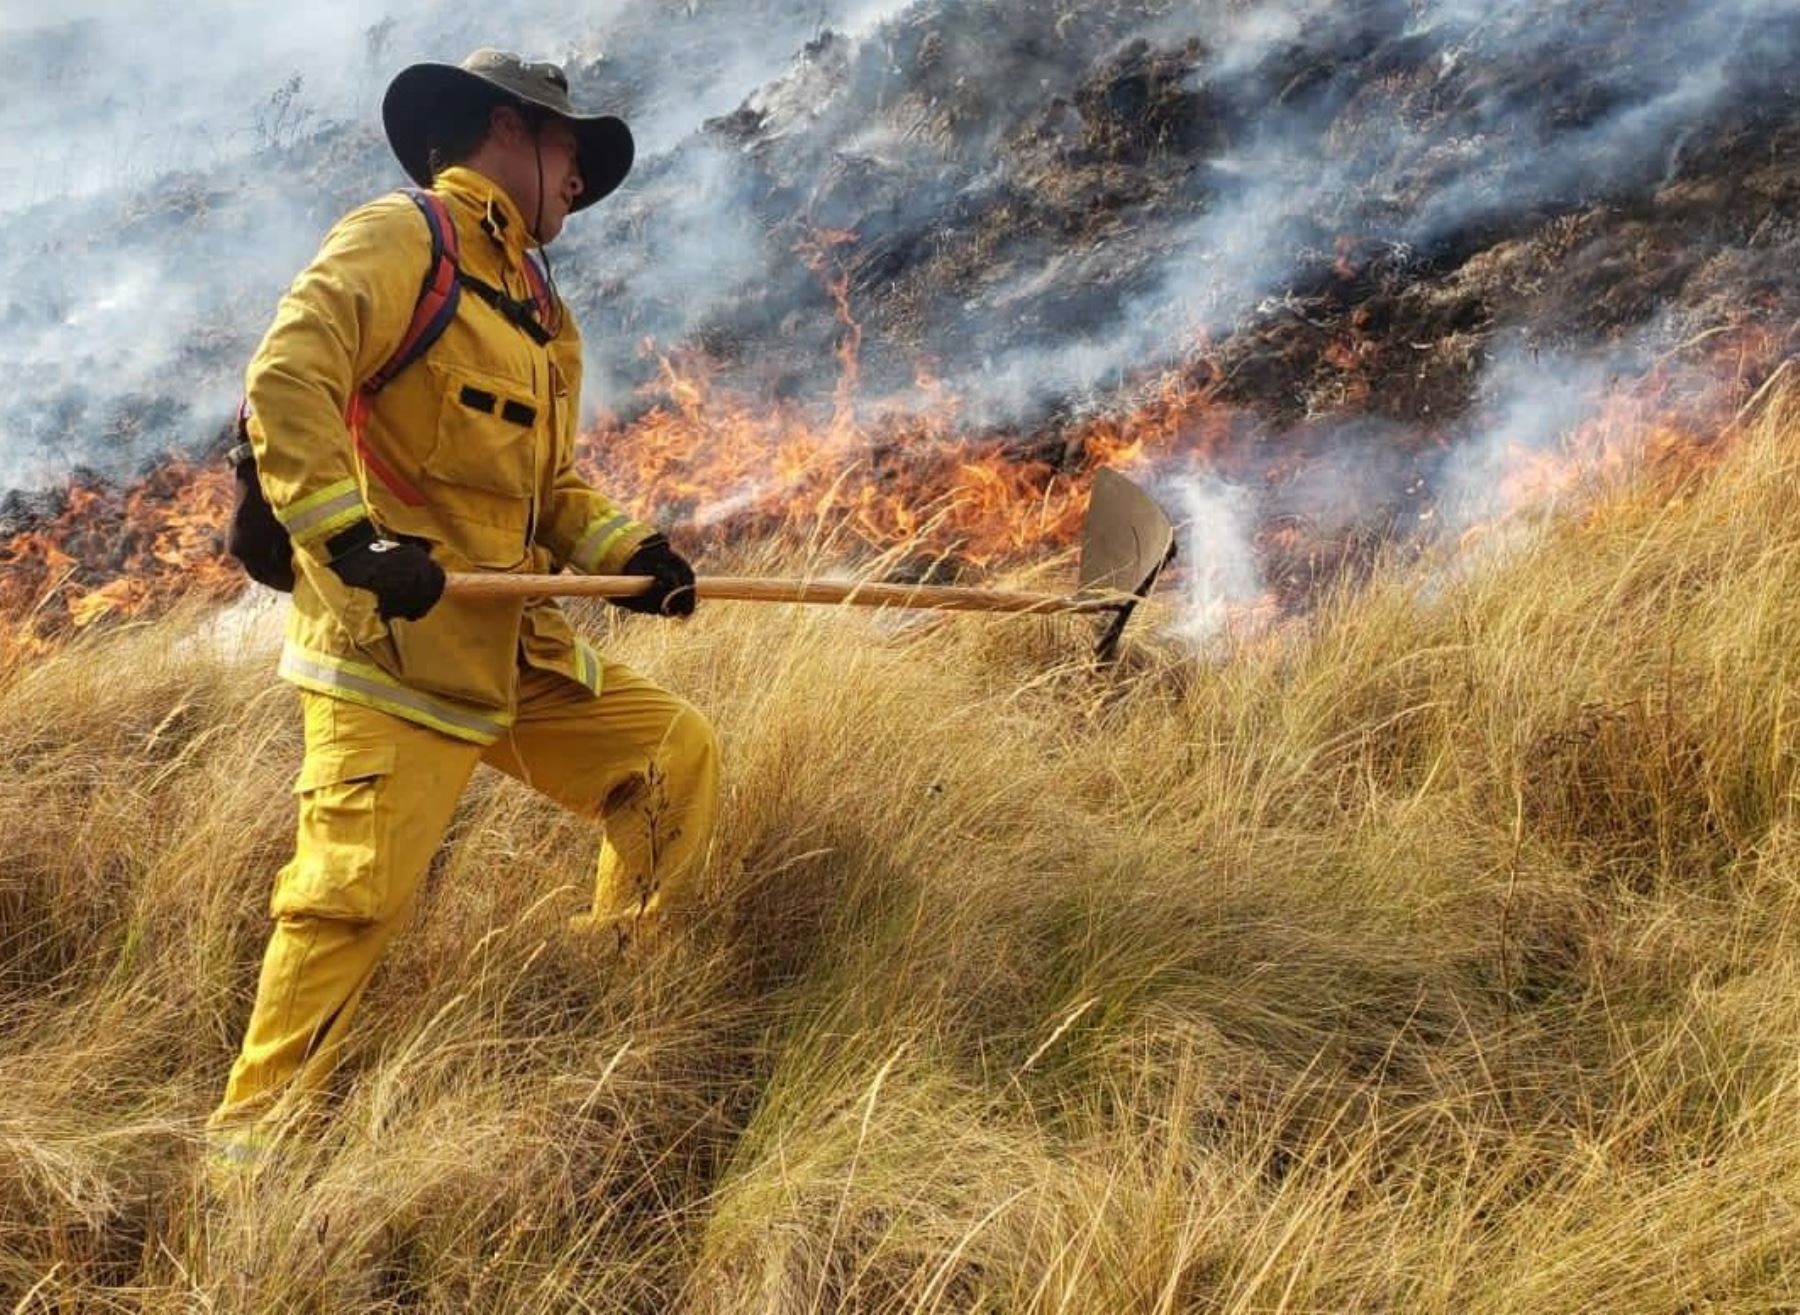 Incendio forestal arrasa con 82 hectáreas de pastos naturales en el Parque Nacional Huascarán, en la sierra de Áncash, informó el COER.